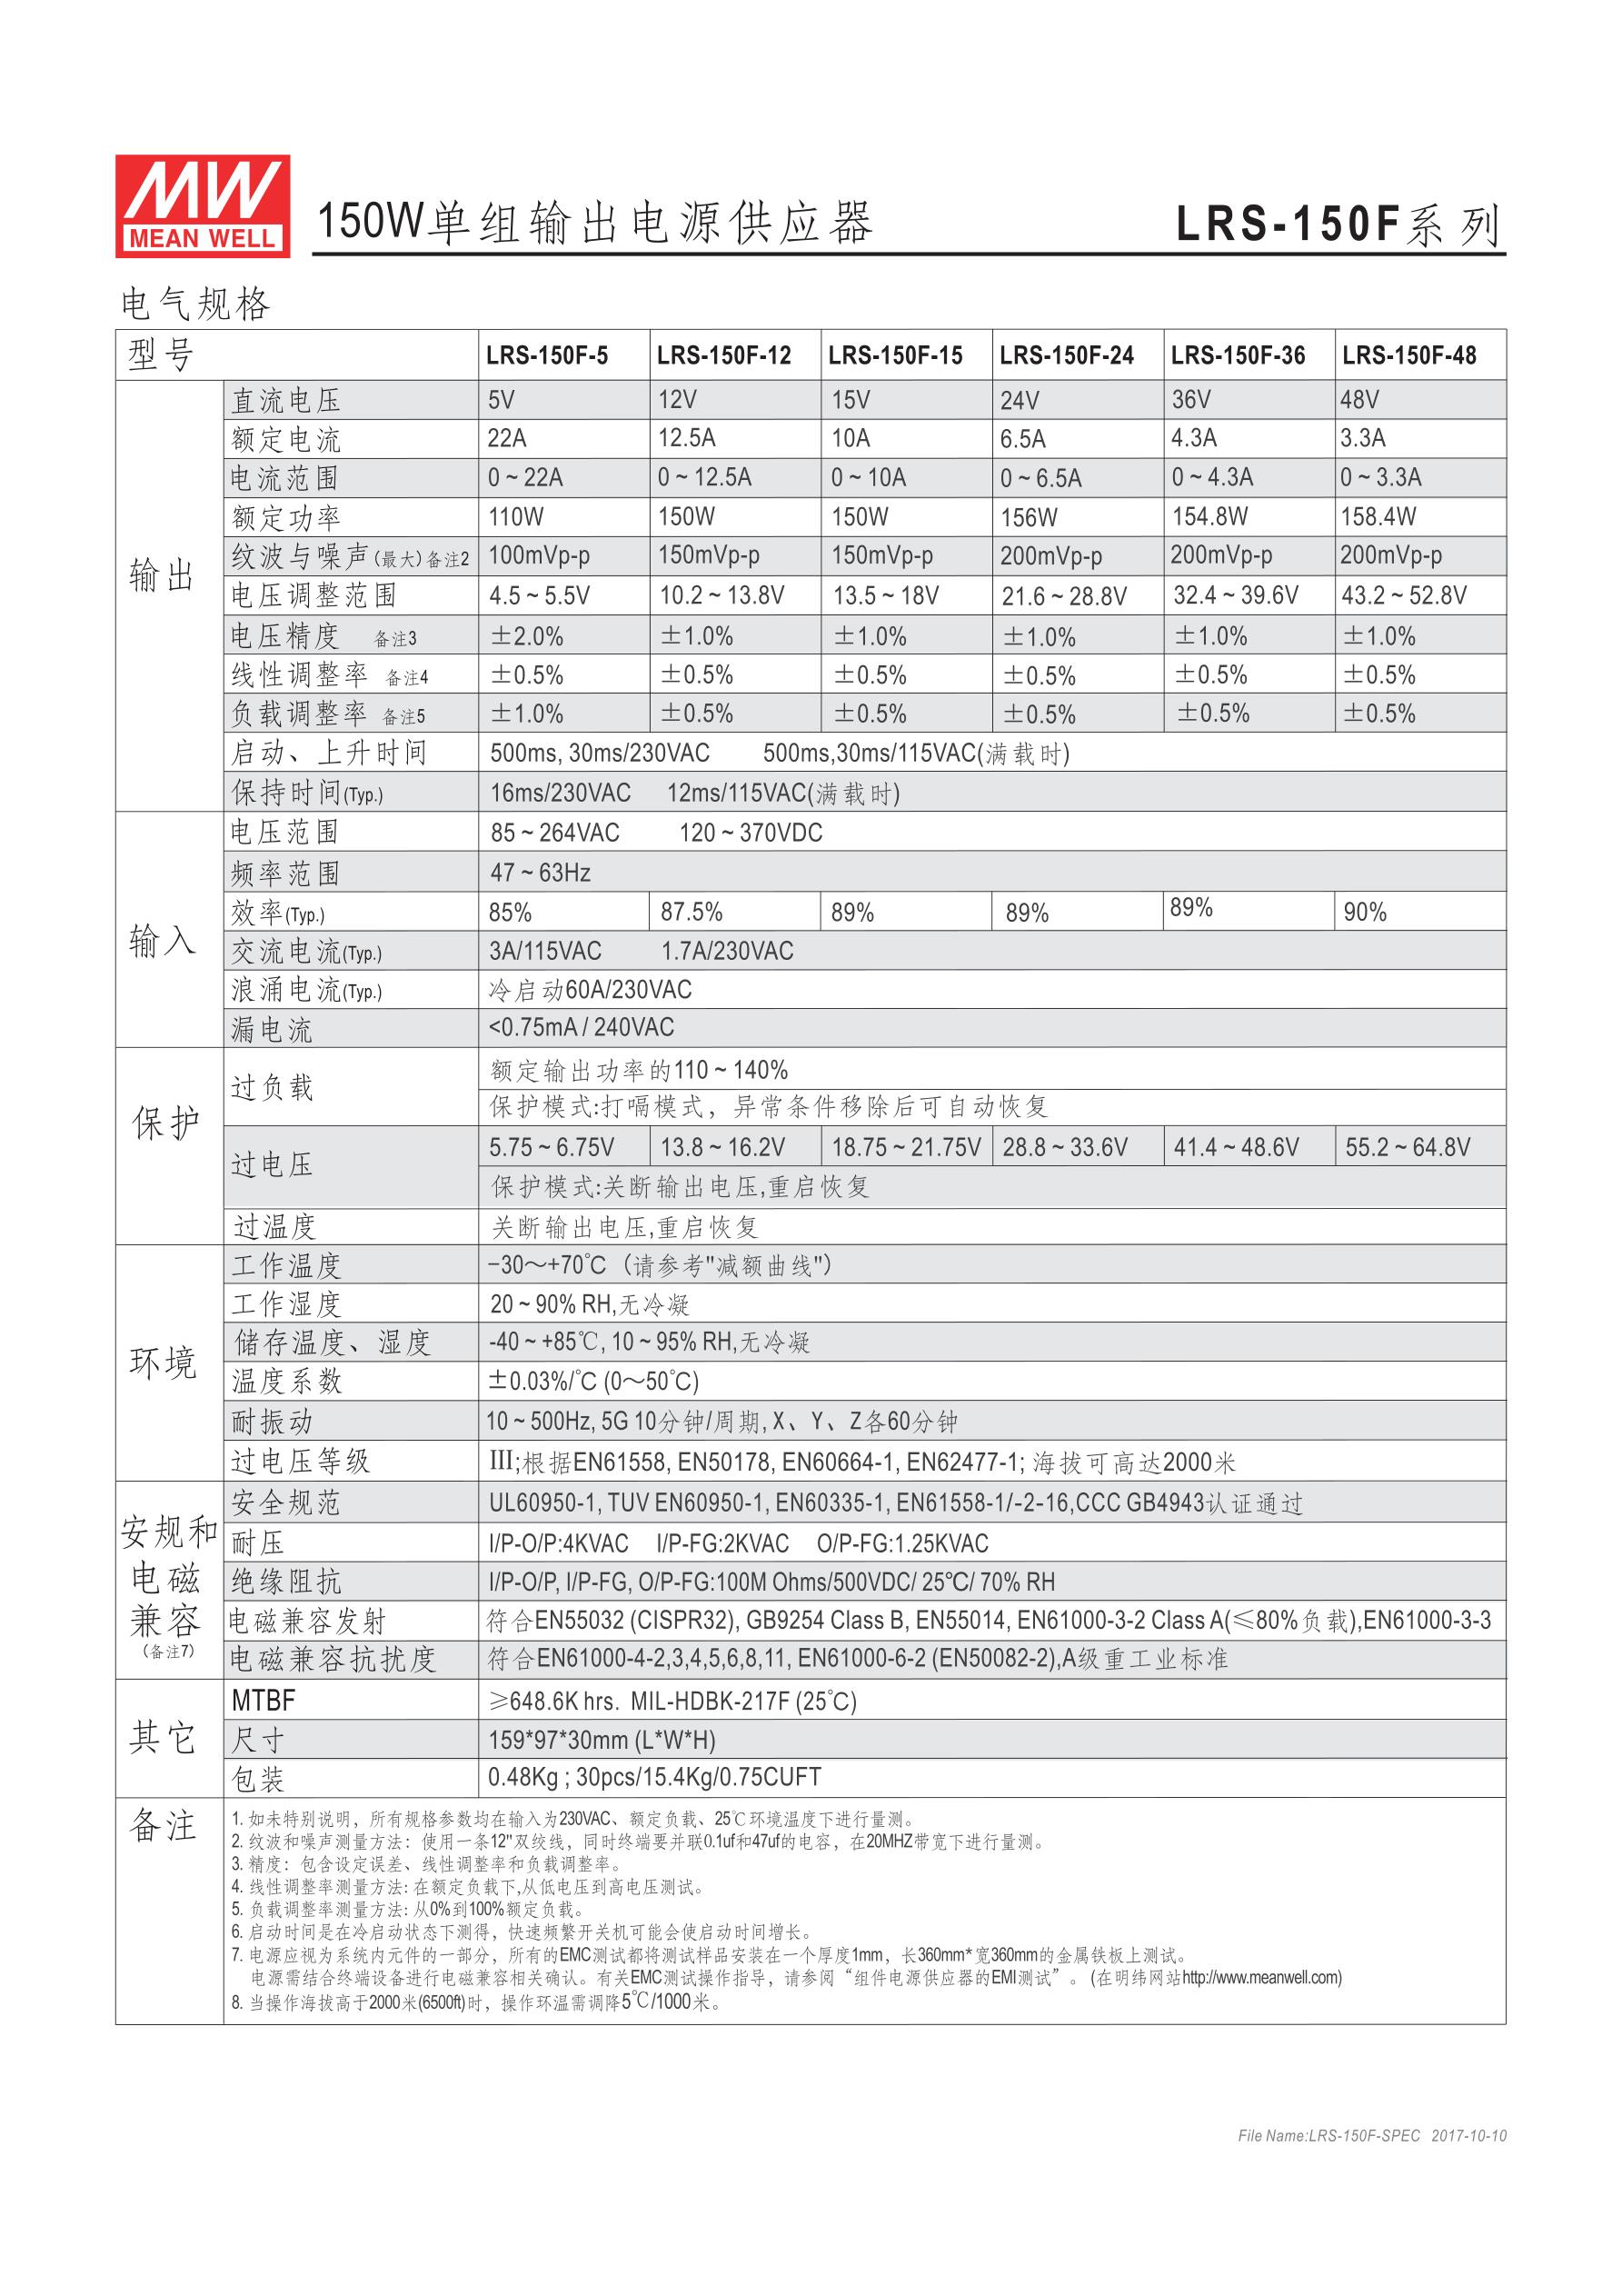 台湾明纬电源LRS-150F-5 110W 5V22A输出 (全电压输入型)明纬超薄高性能开关电源 明纬开关电源,明纬电源,台湾明纬官网,MEAN WELL,LRS-150F-5